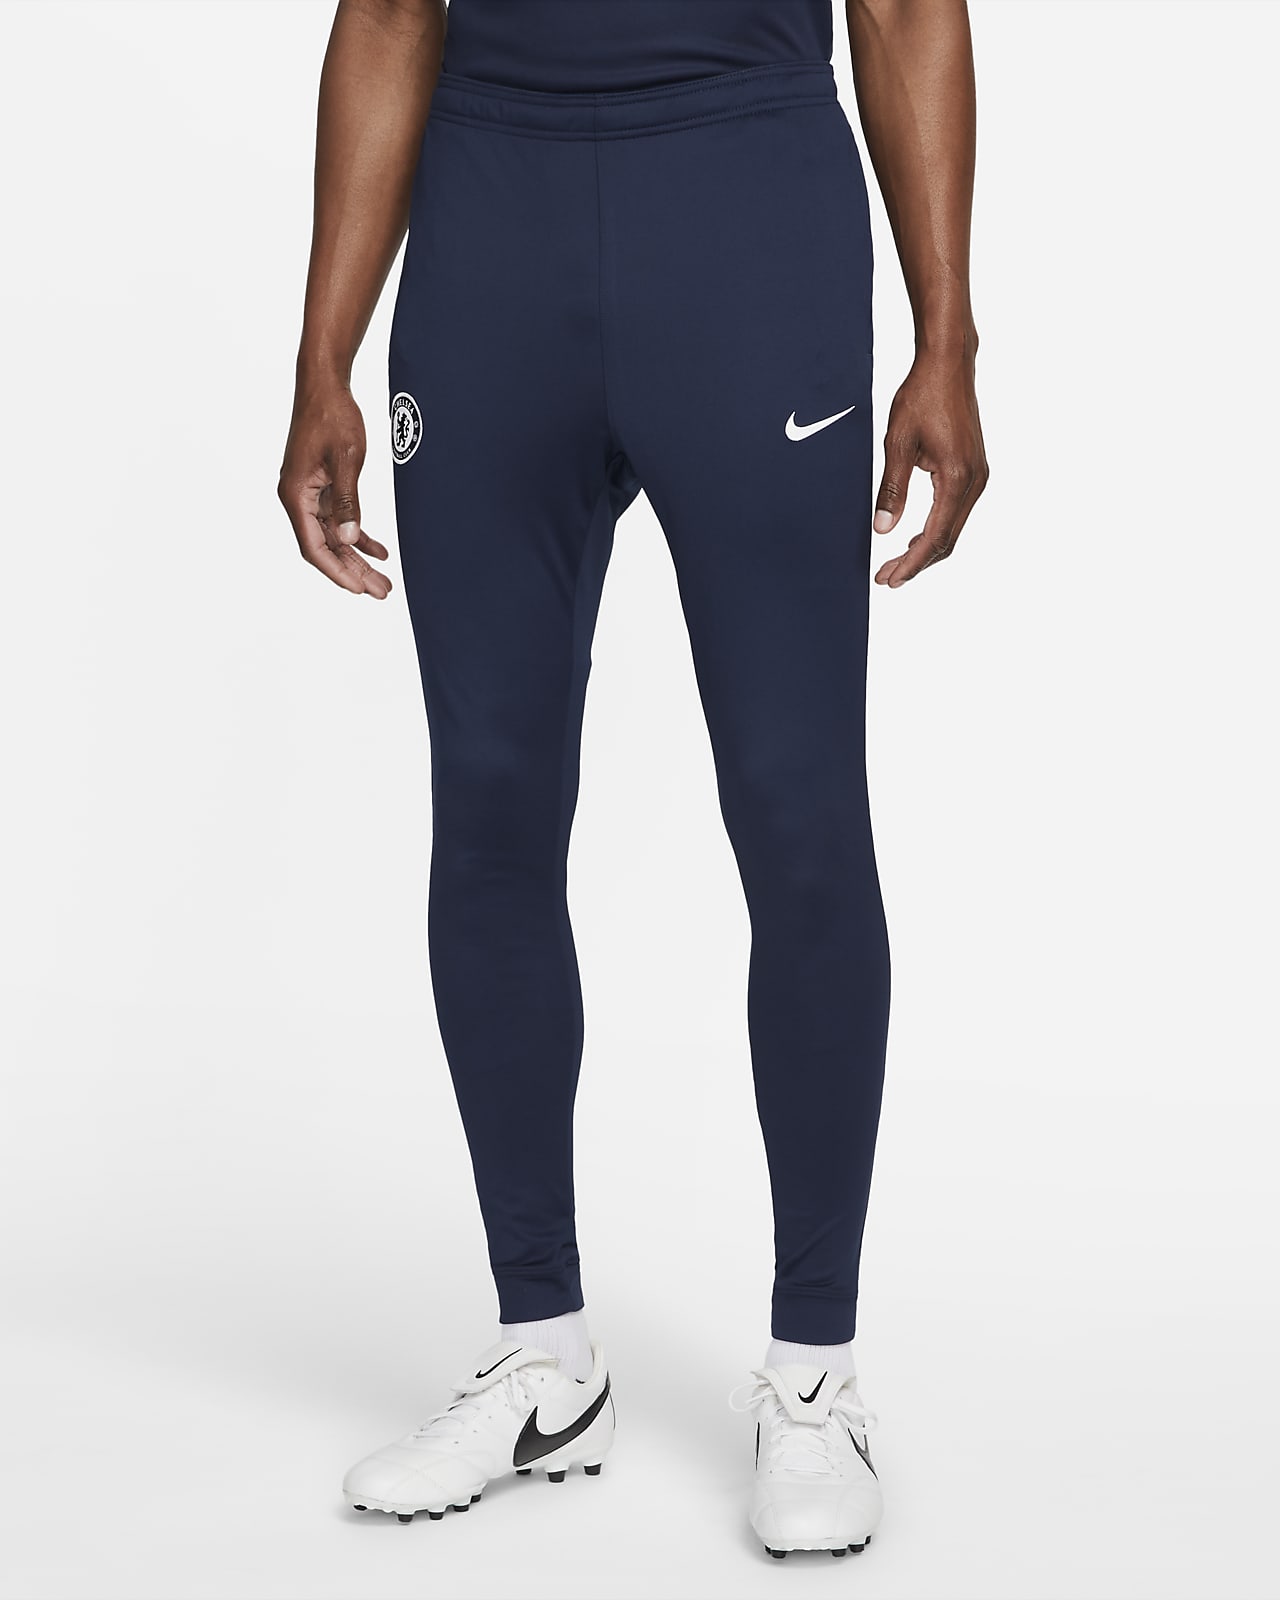 Conquistar Relación intervalo Chelsea FC Strike Pantalón deportivo de fútbol de tejido Knit Nike Dri-FIT  - Hombre. Nike ES